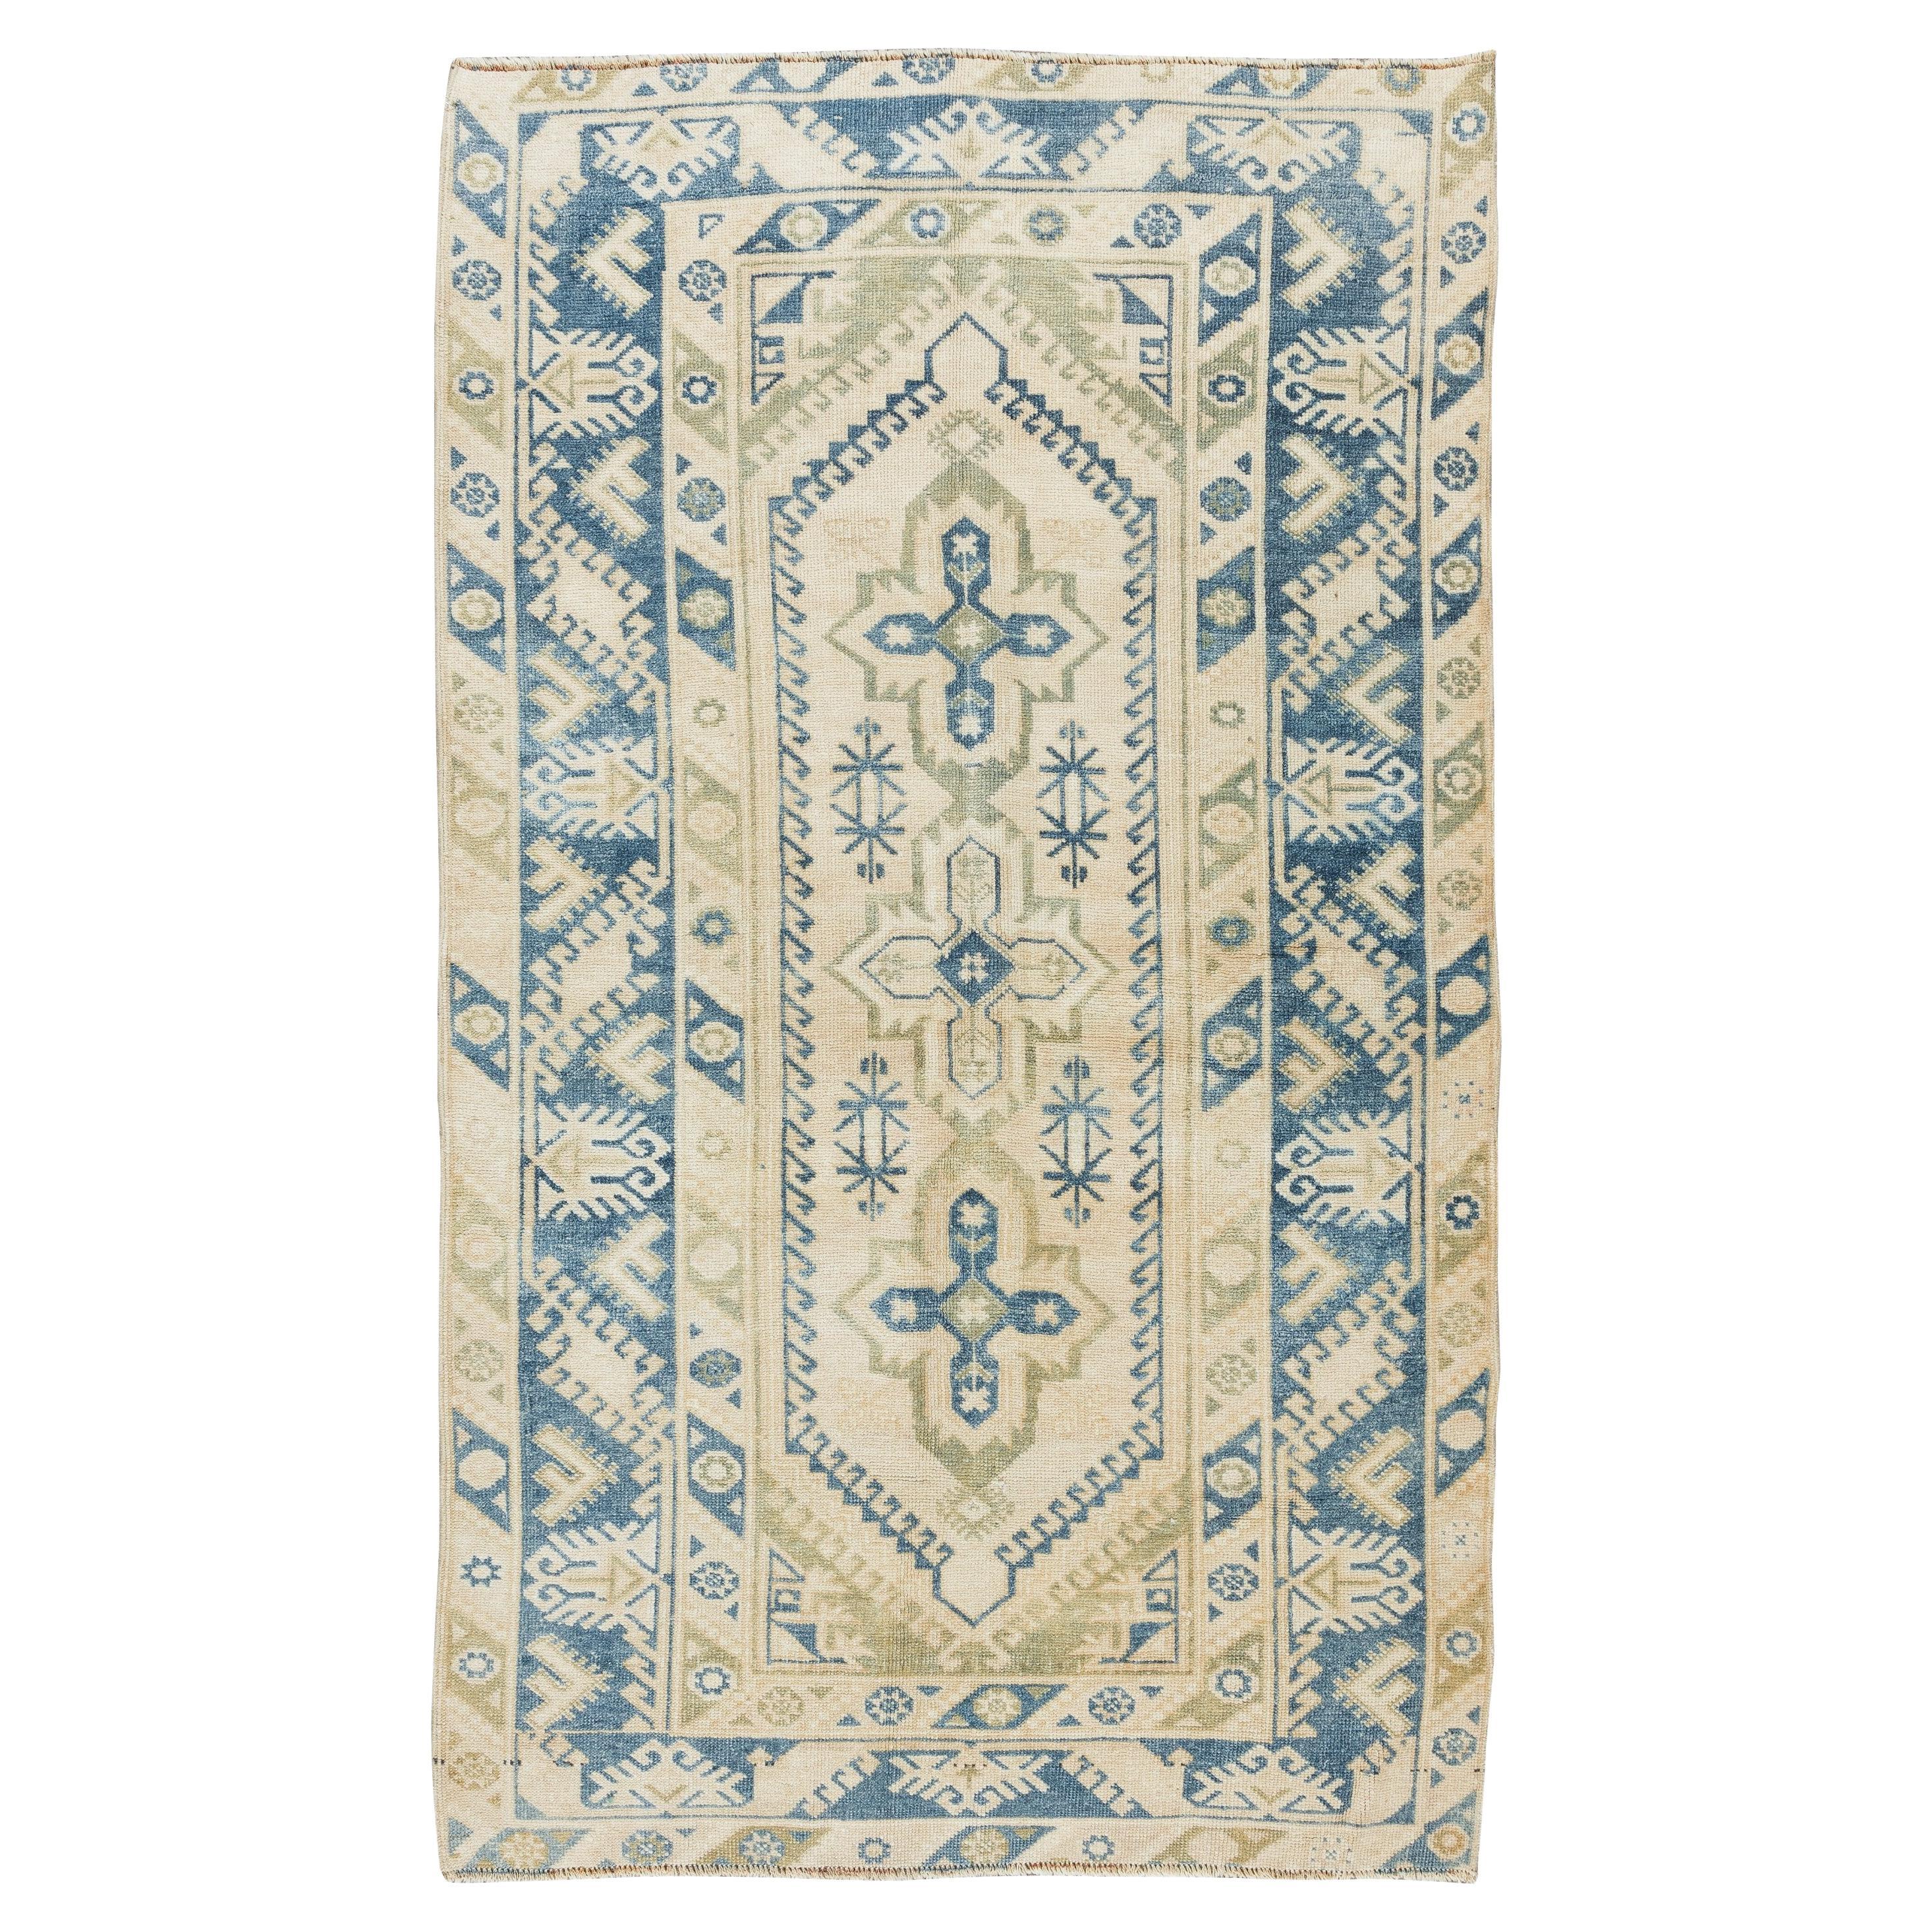 4x6.9 Ft Vintage Handgefertigter Teppich aus Zentralasien, Bodenbezug aus Wolle